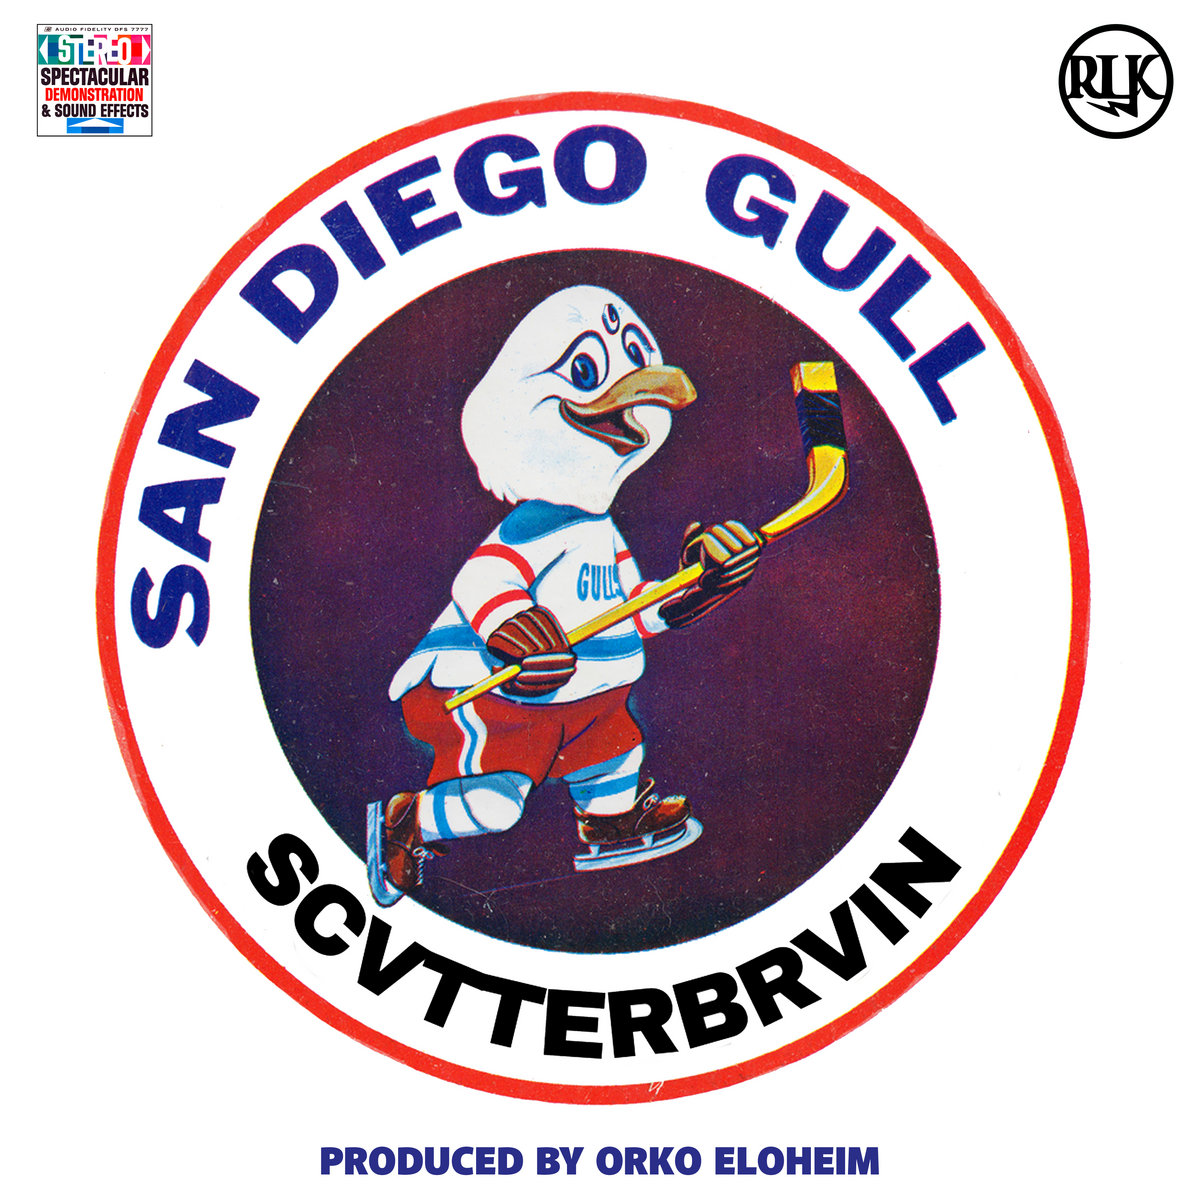 Scvtterbrvin – San Diego Gull